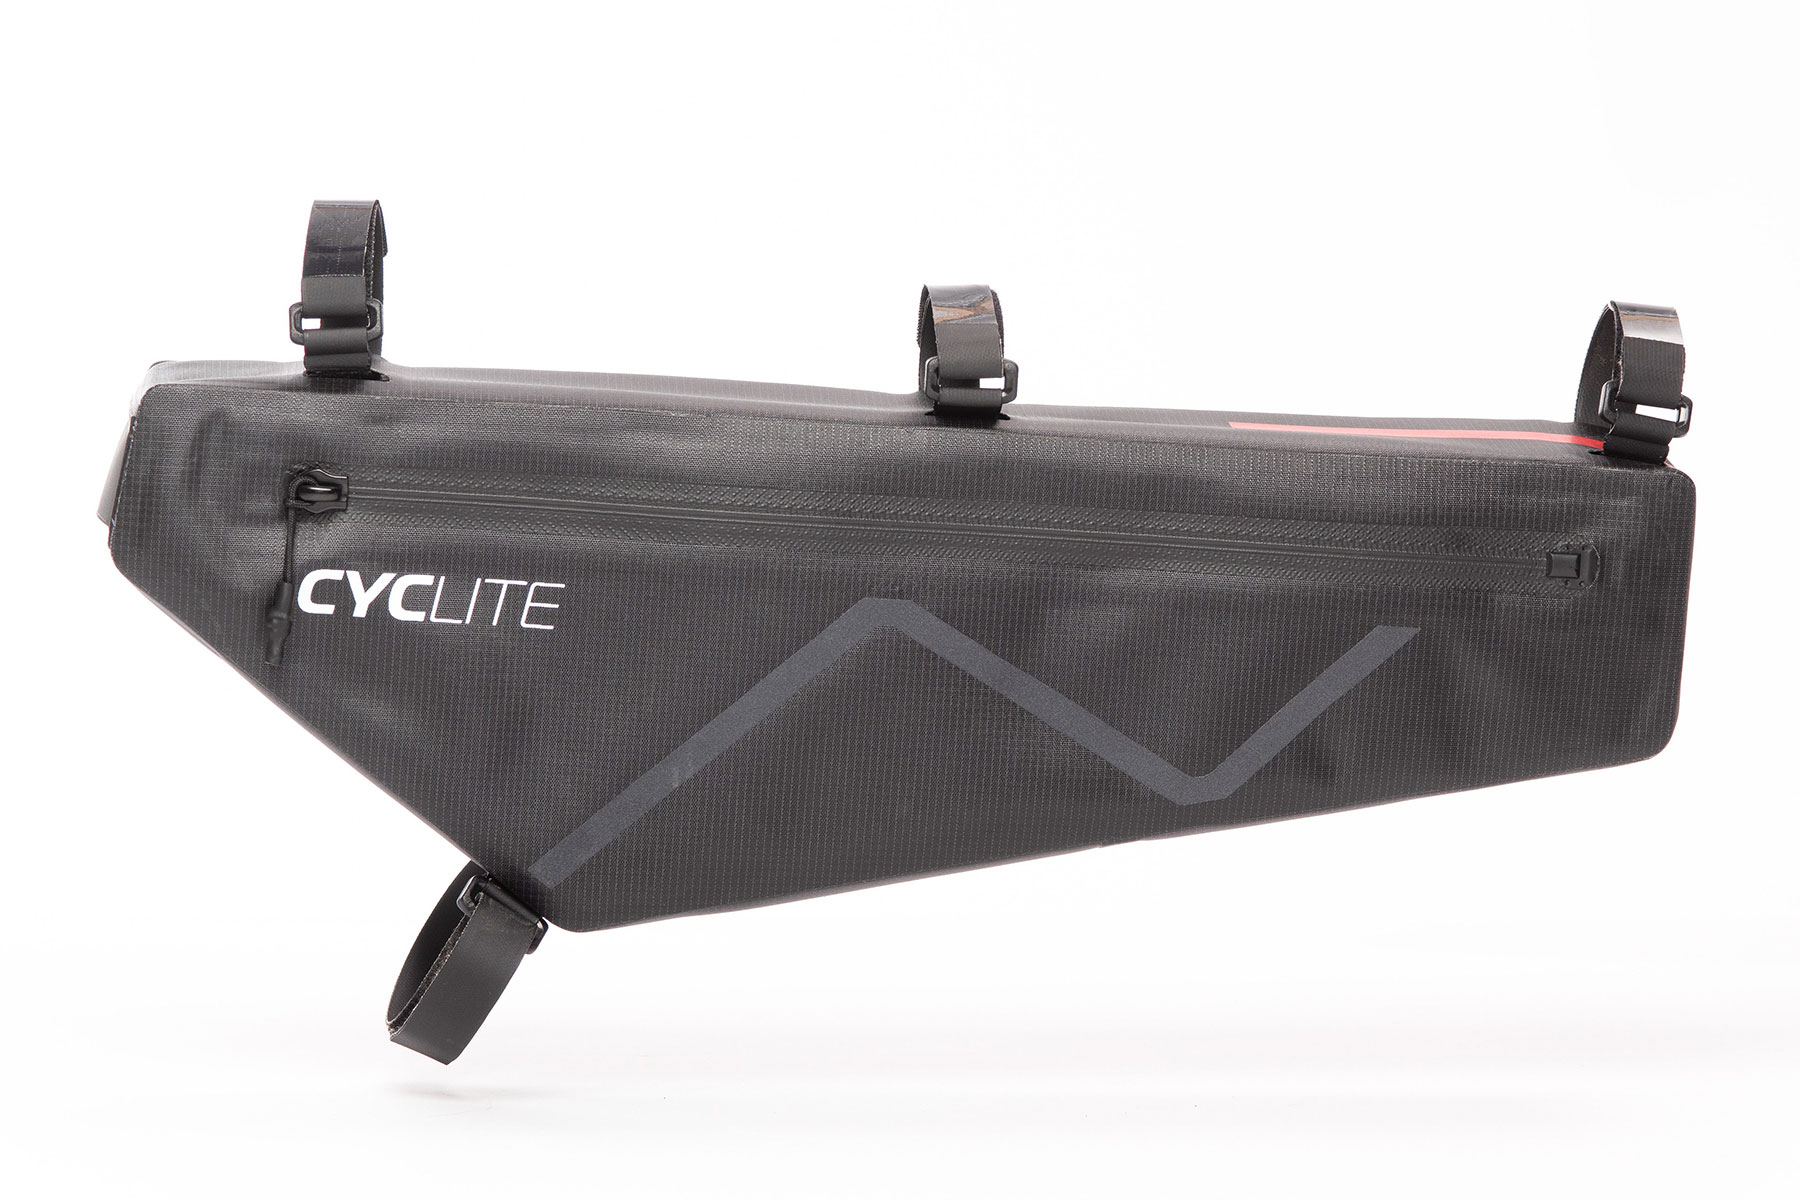 Ein Produktbild der Rahmentasche von Cyclite.